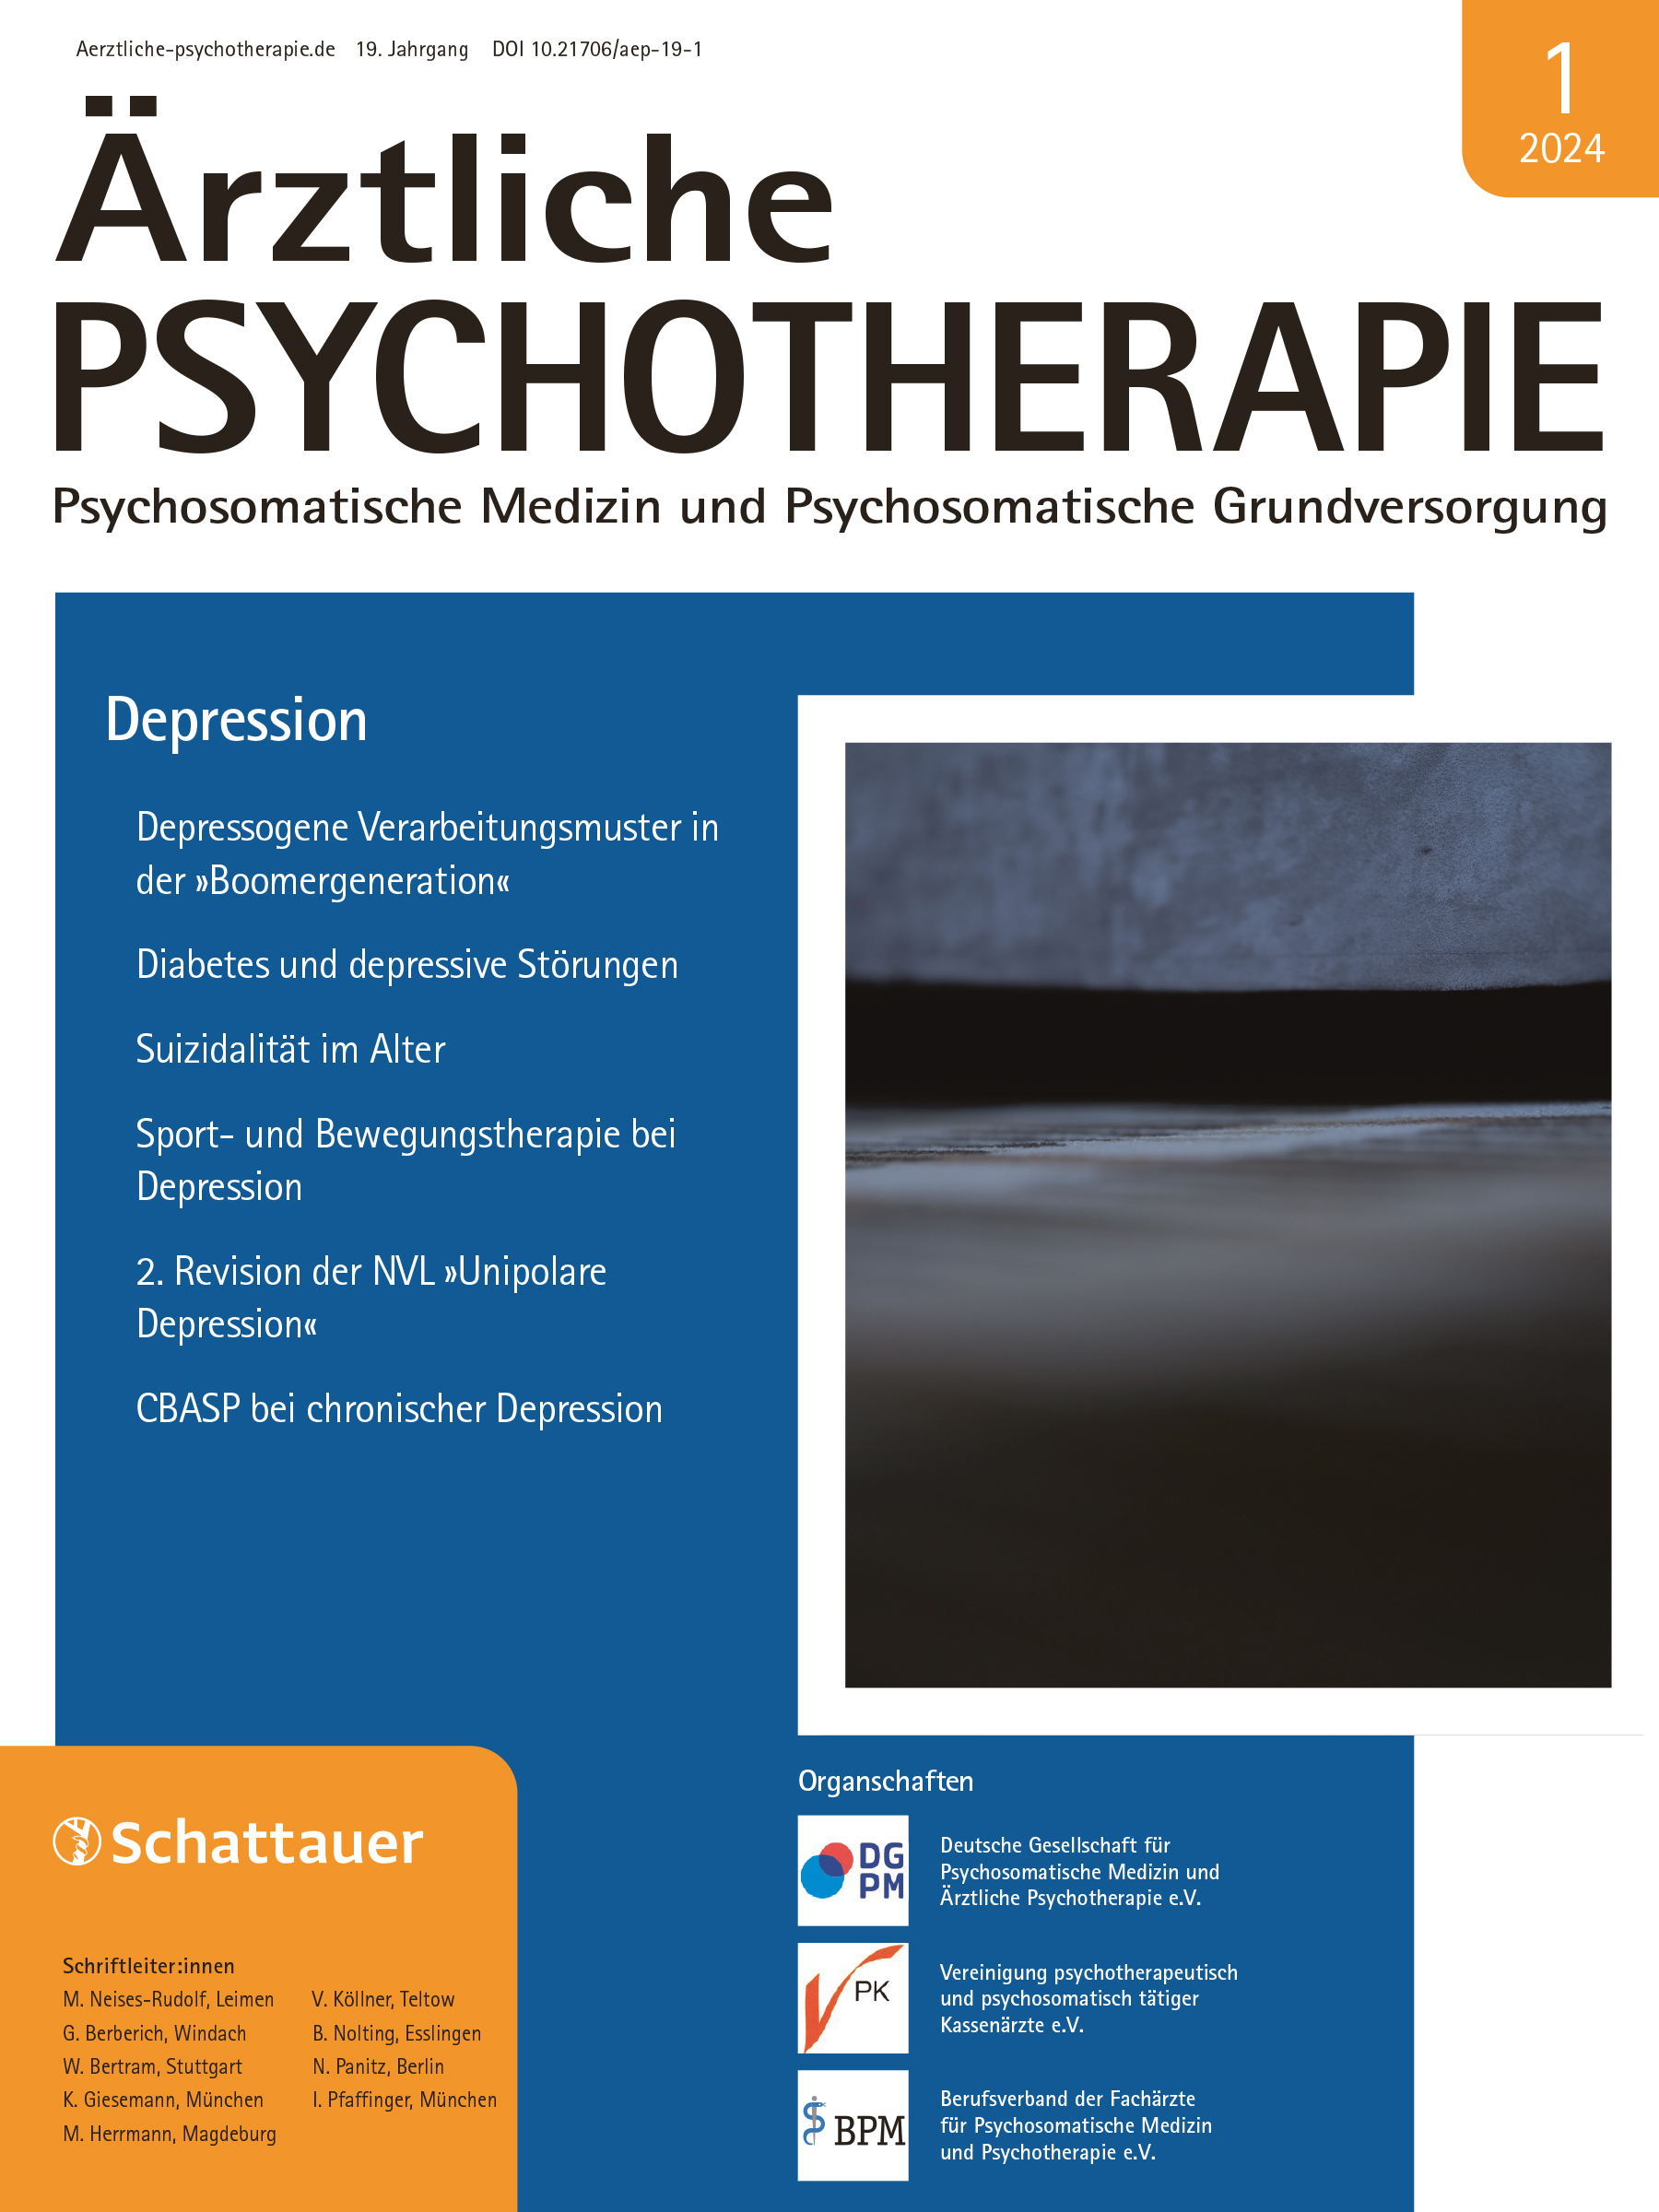 Psychosomatische Medizin und Psychosomatische Grundversorgung